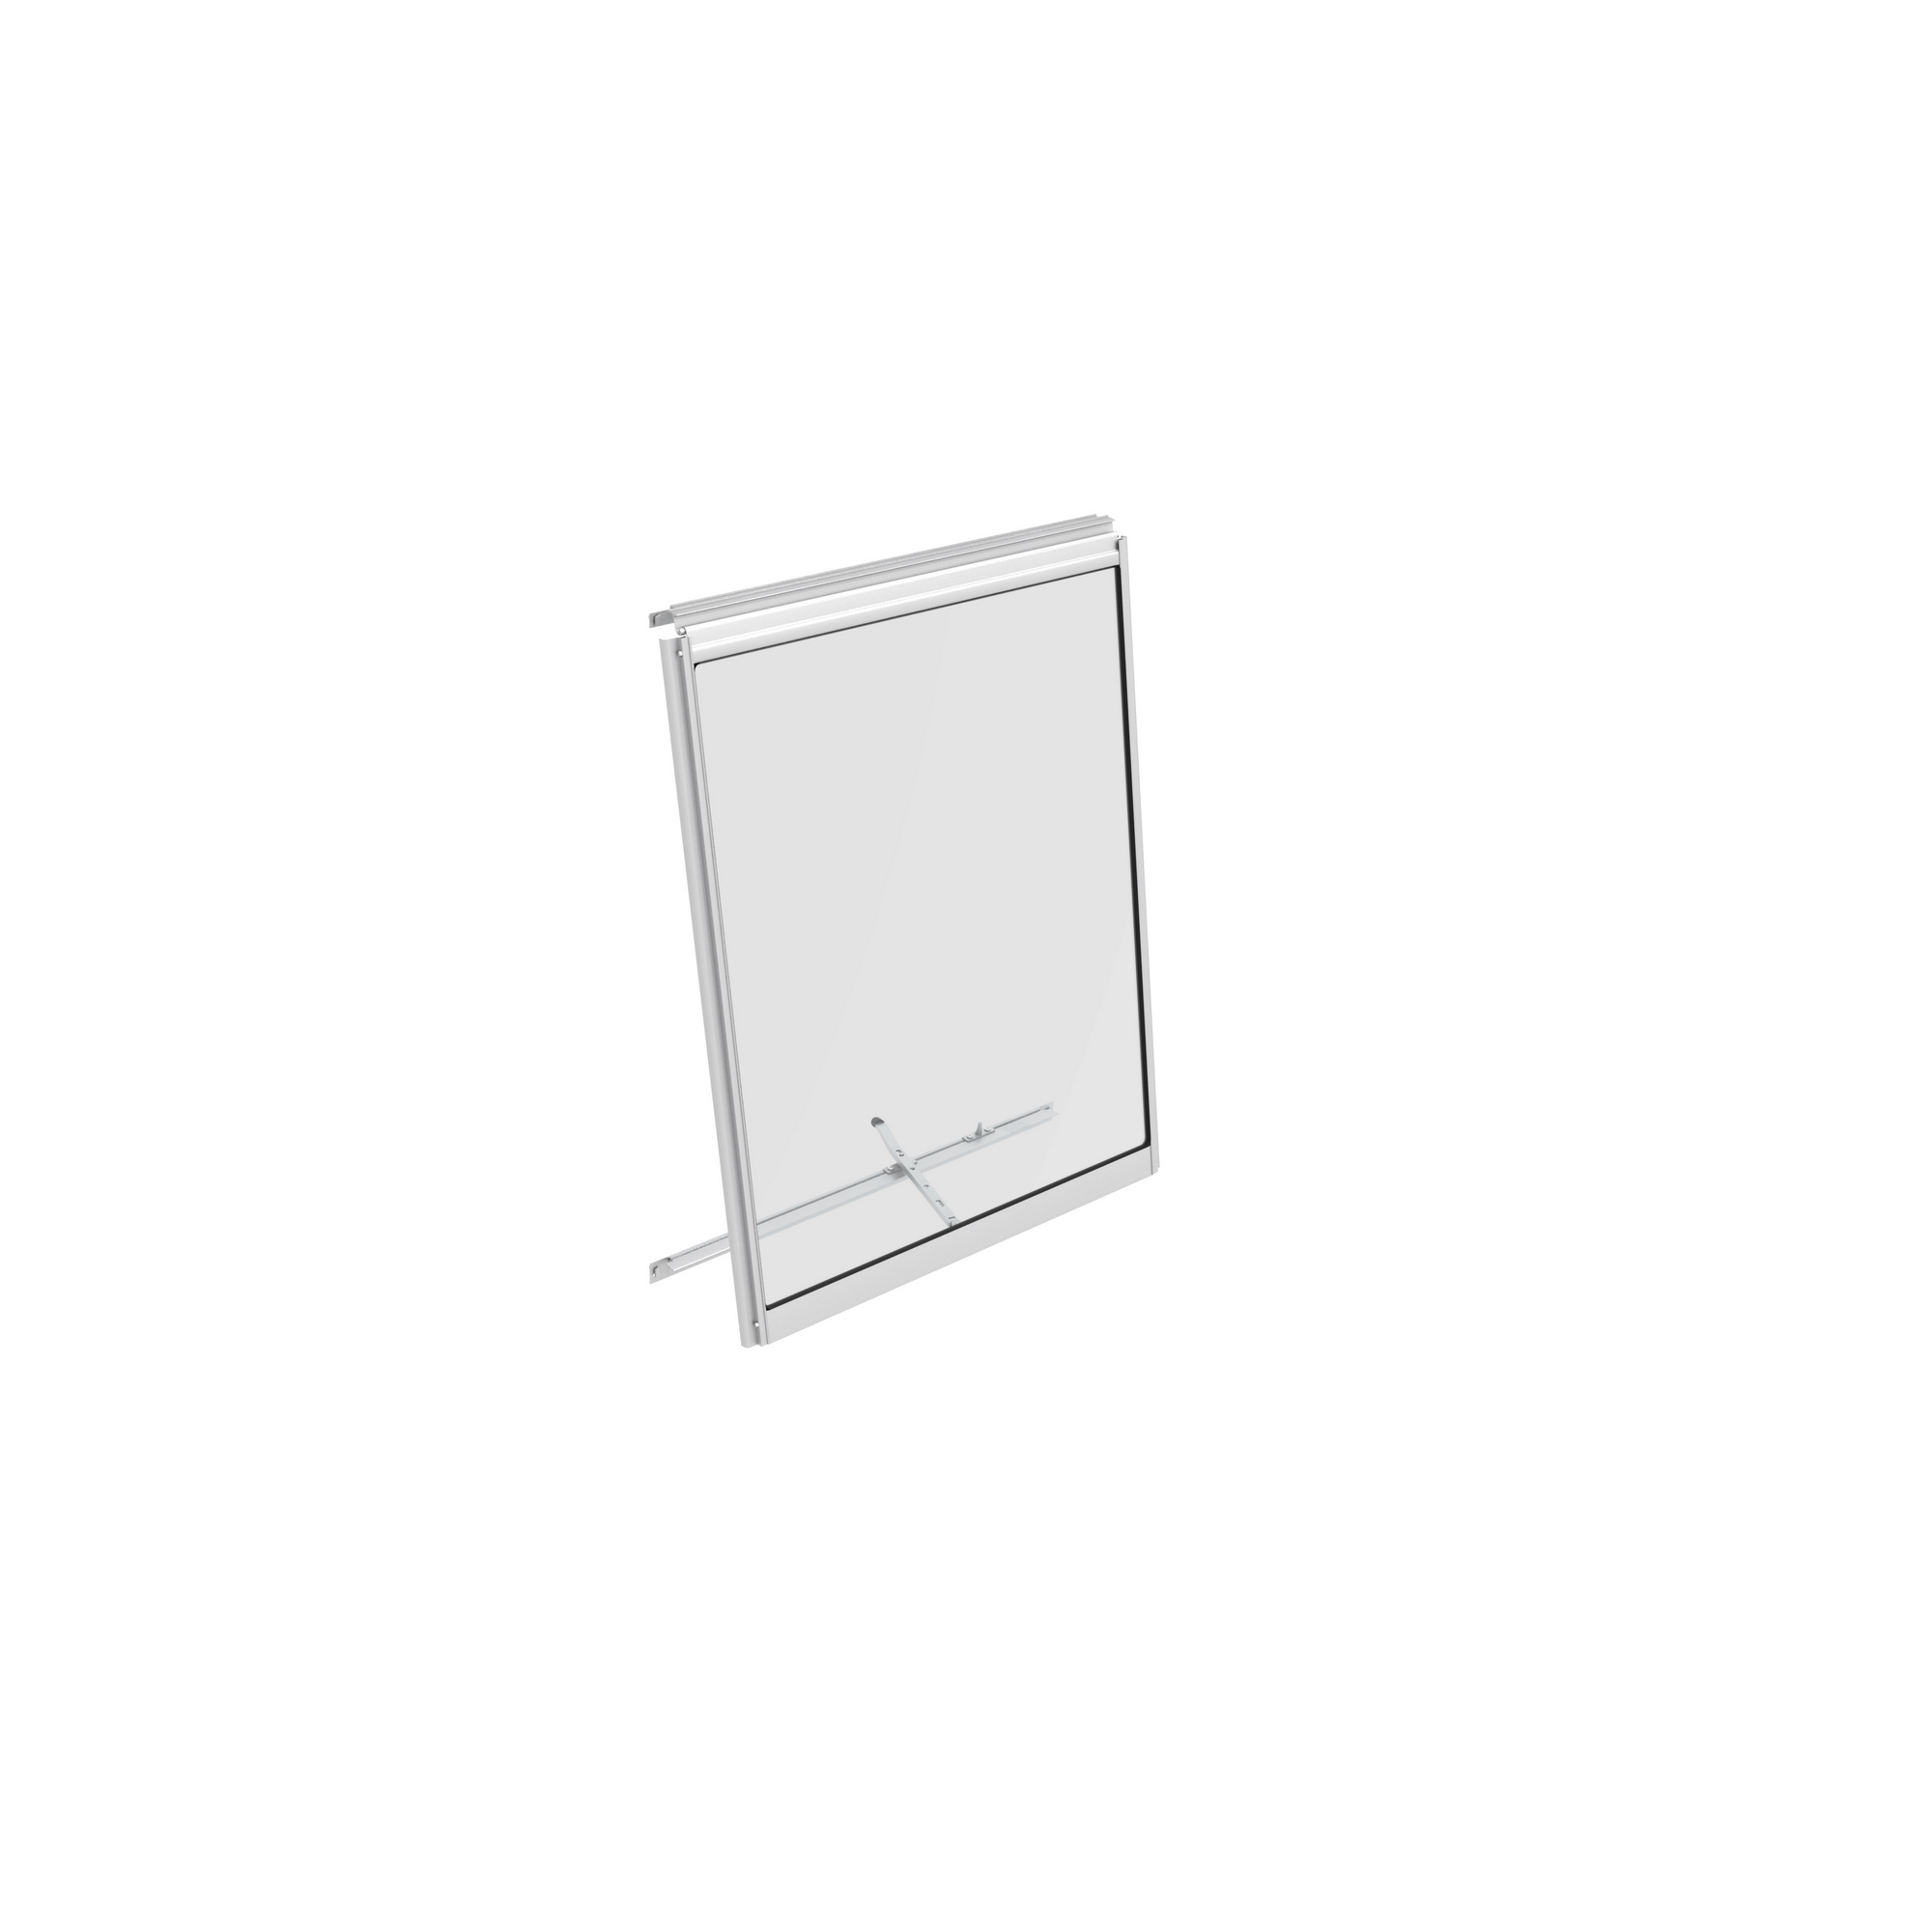 Alu-Seitenfenster 'V' aluminiumfarben 59 x 79,2 cm für Gewächshäuser + product picture